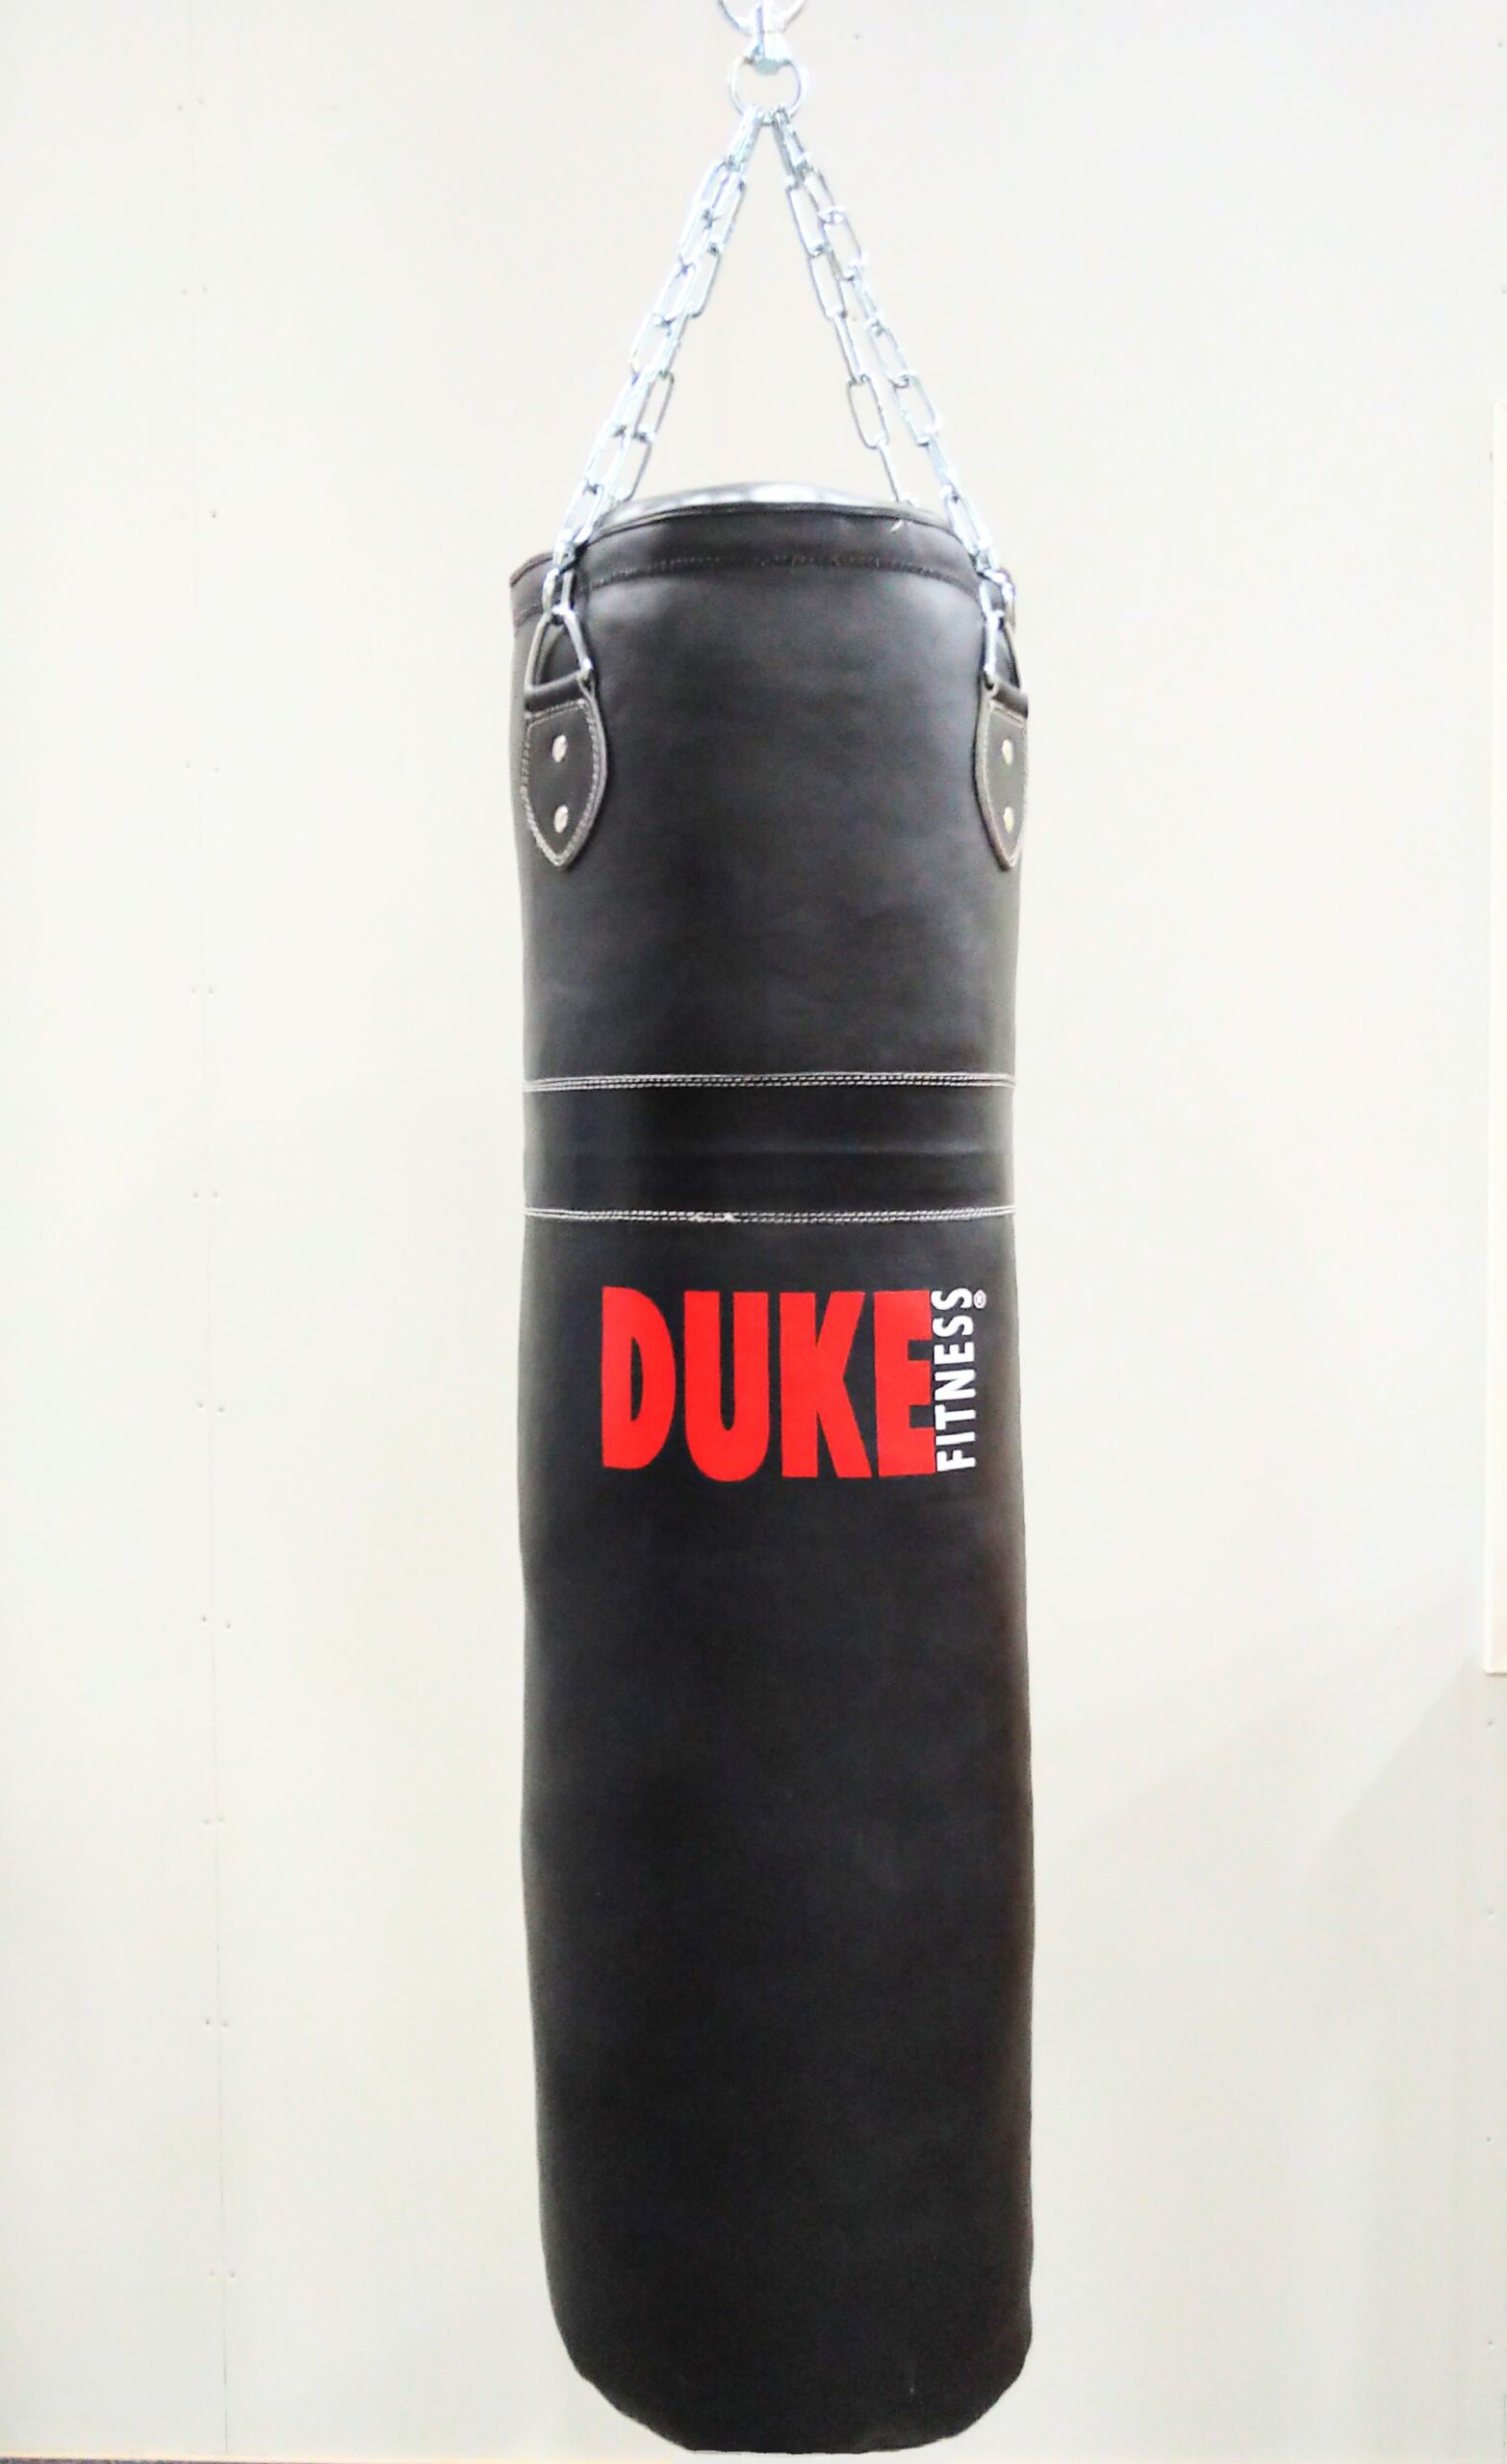 Duke Fitness nyrkkeilysäkki aitoa nahkaa!